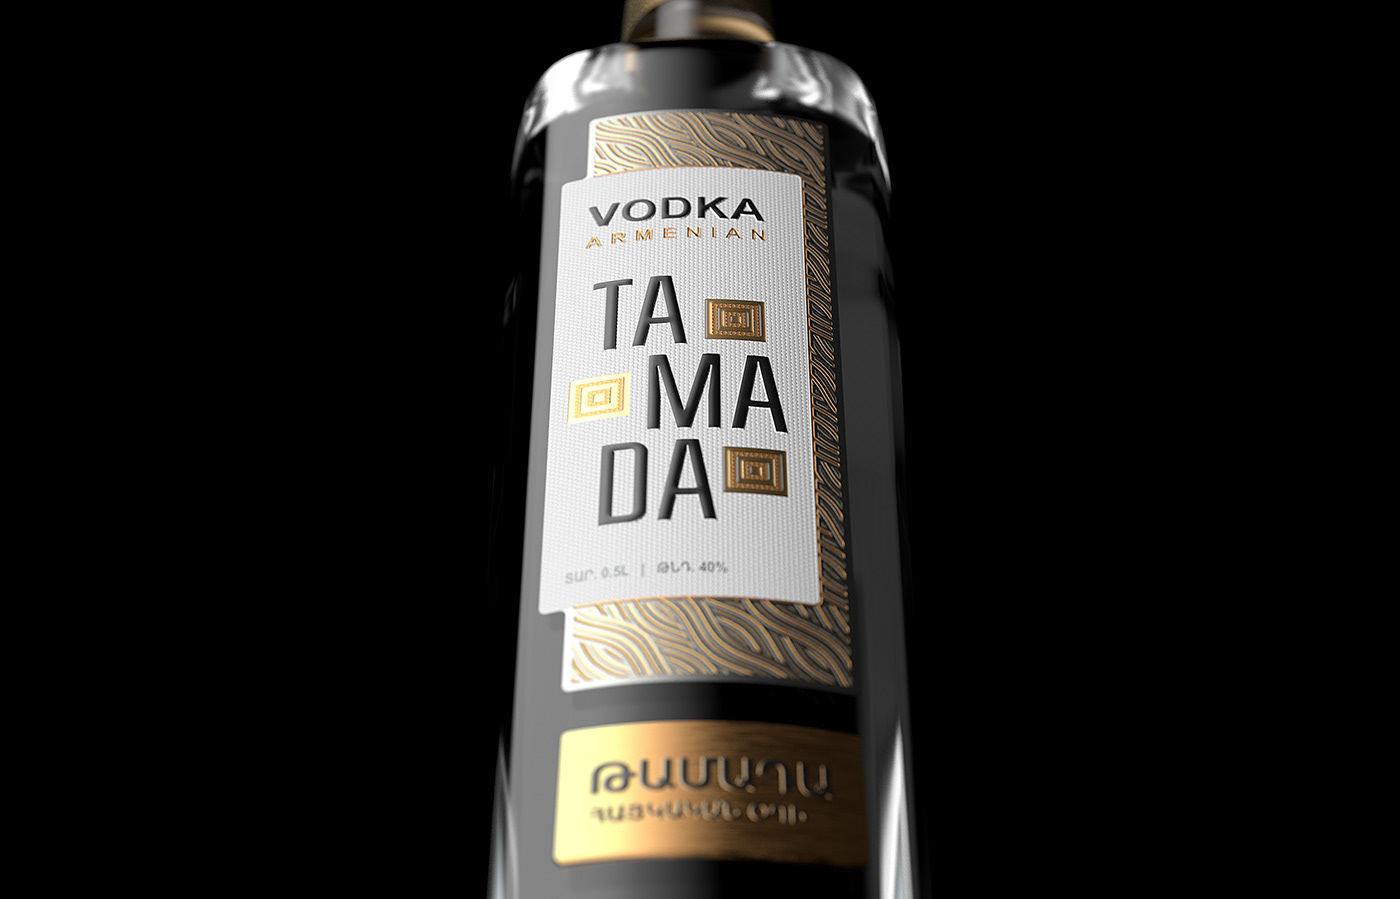 alcohol packaging label design labeling package design  Packaging shumi visual identity Vodka vodka design vodka label